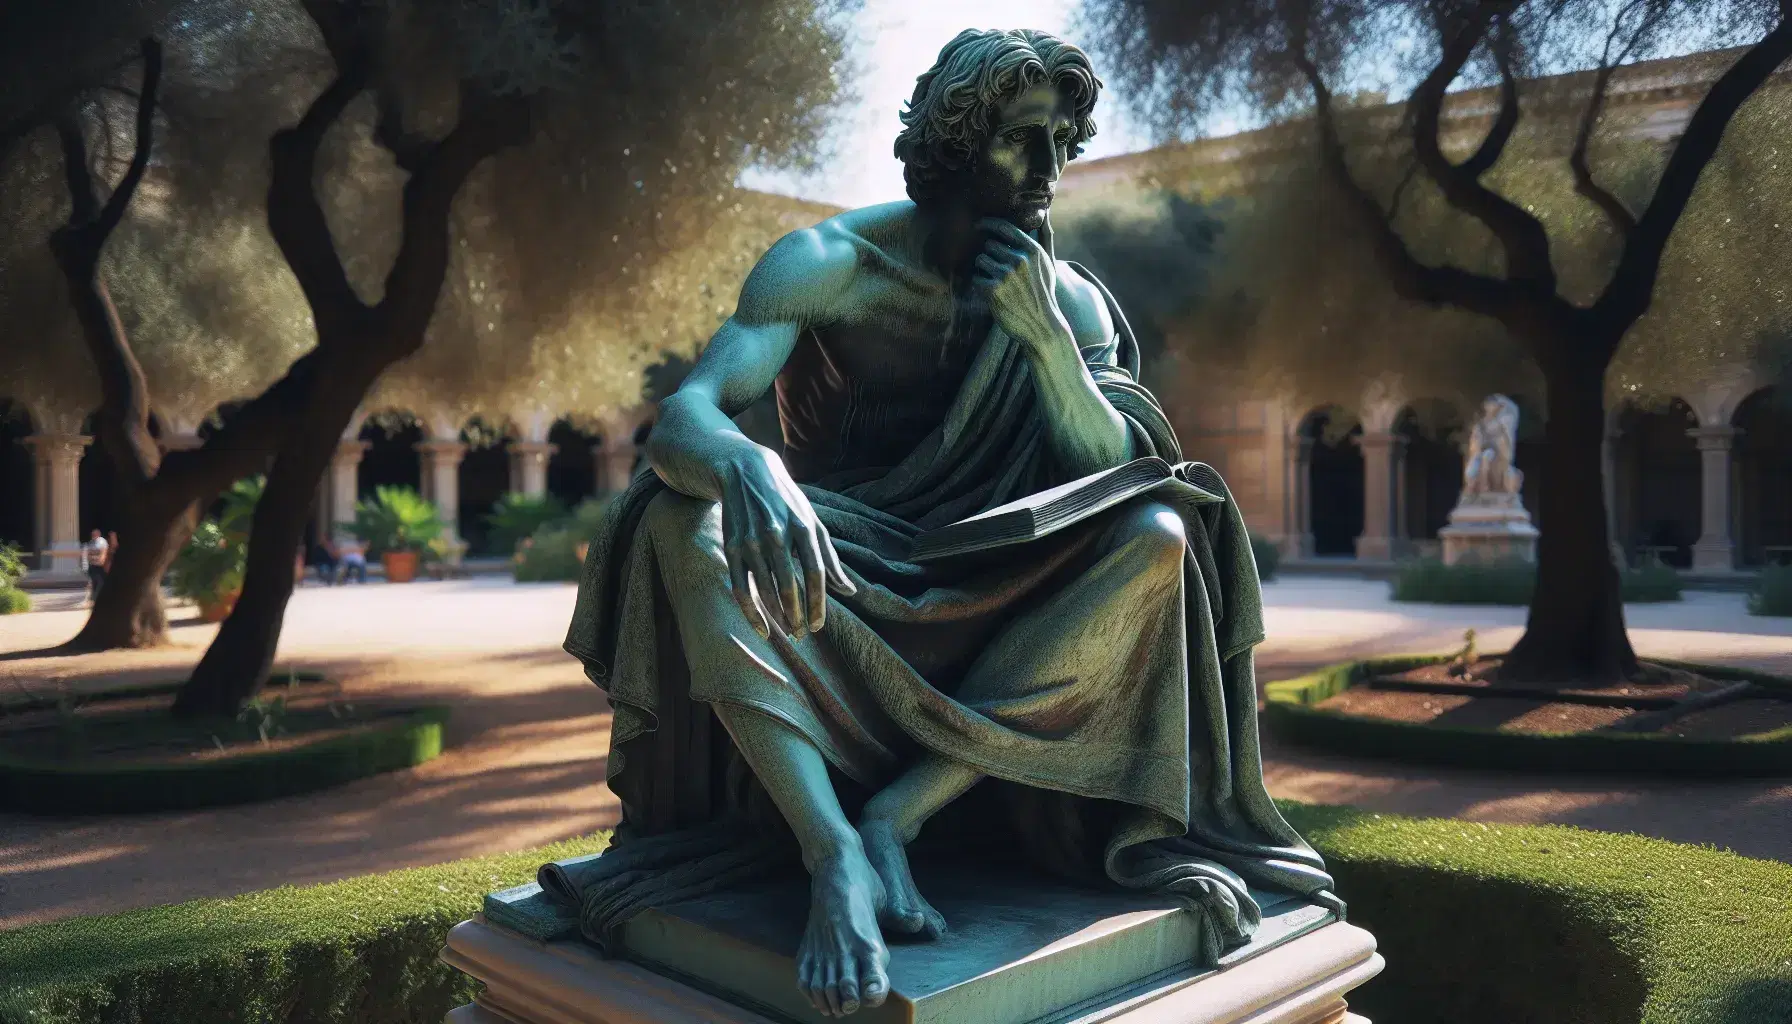 Estatua de bronce de hombre pensativo sentado con túnica y libro en un jardín soleado, reflejando serenidad y contemplación.